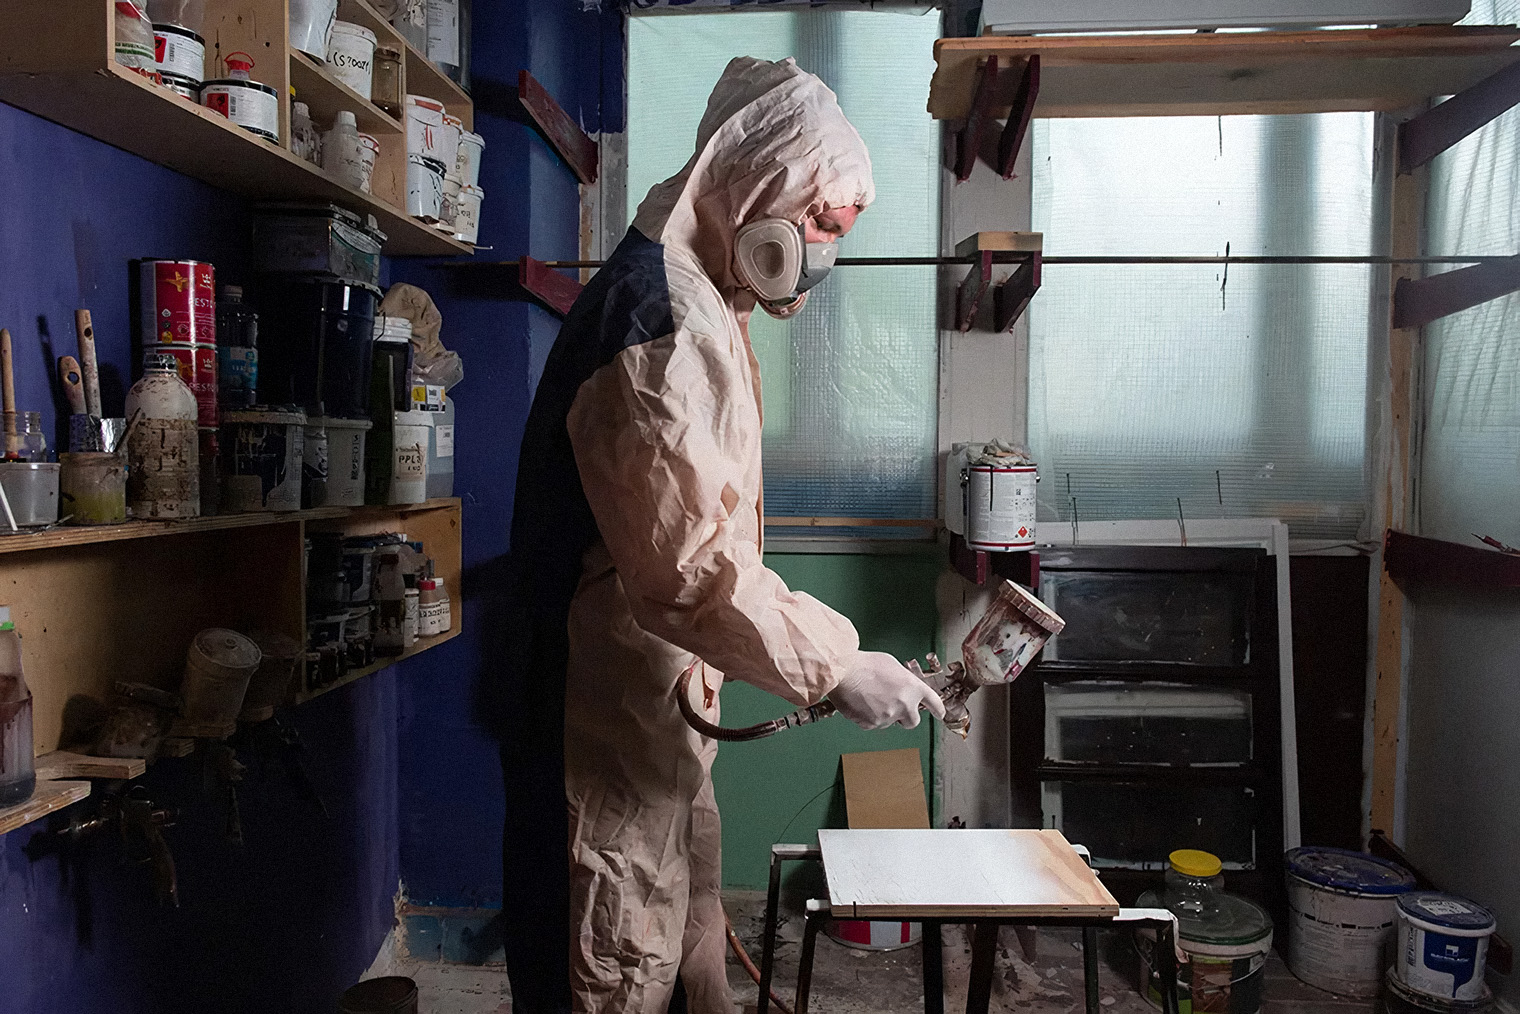 При работе с краскопультом, особенно с токсичными красками, обязательно использовать респиратор или маску для защиты дыхательных путей. Фото: Сергей Николаев